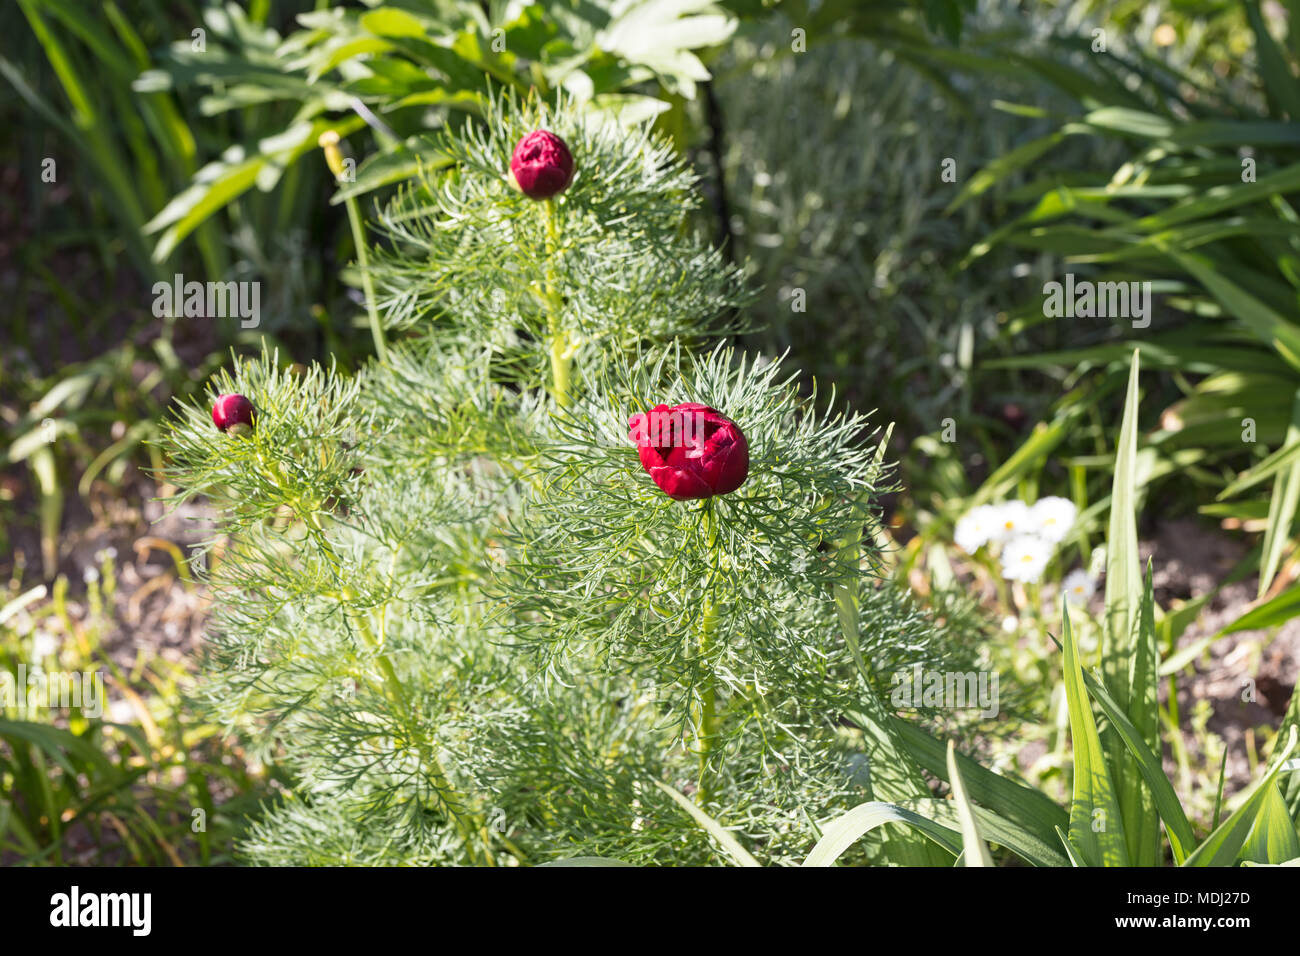 "Plena", Dillpion Fernleaf doble Peonía (Paeonia tenuifolia) Foto de stock